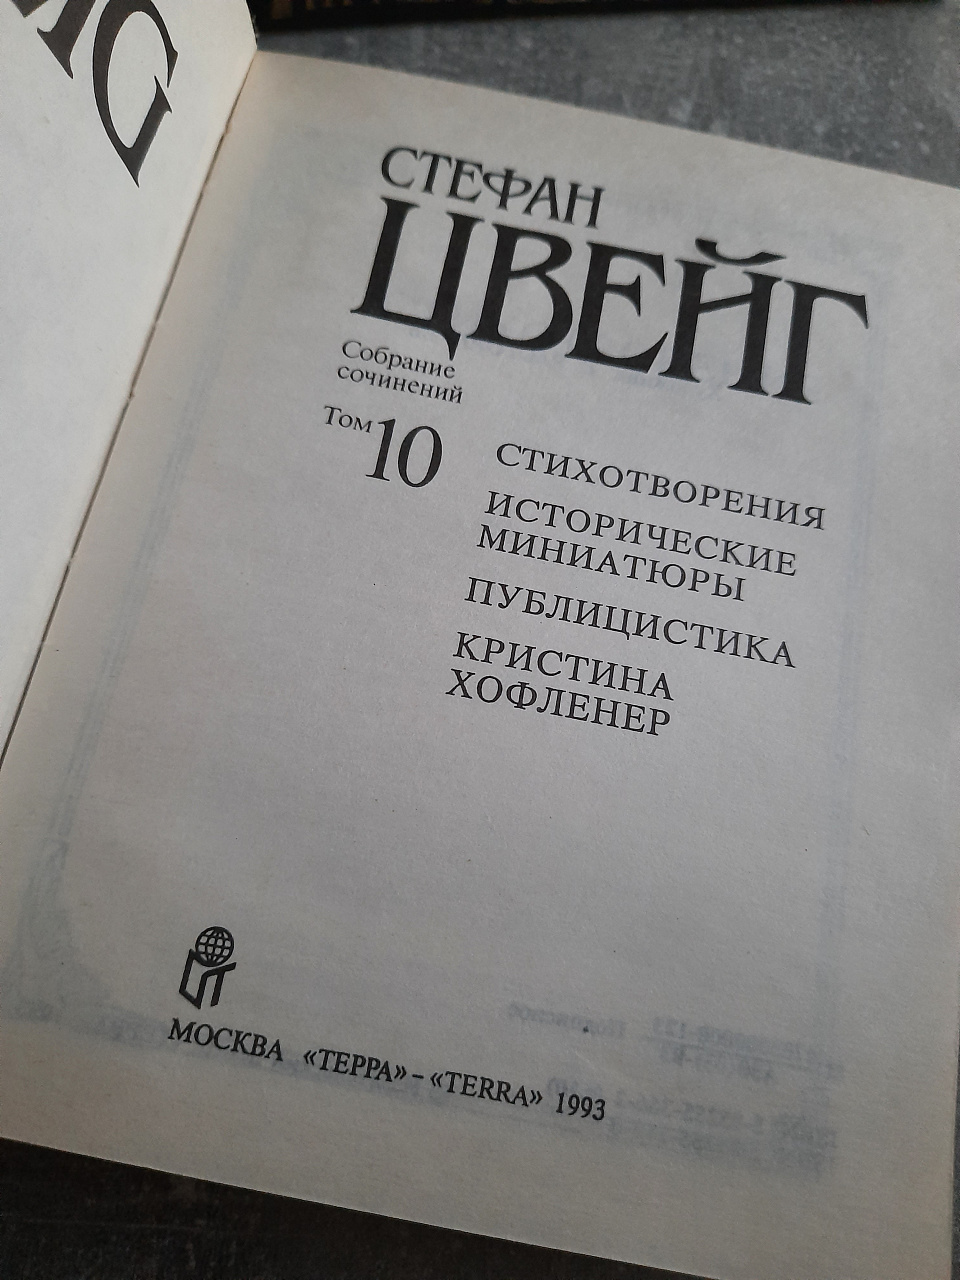 Стефан Цвейг Собрание сочинений в 10 томах 1992-1993 год выпуска фото 2